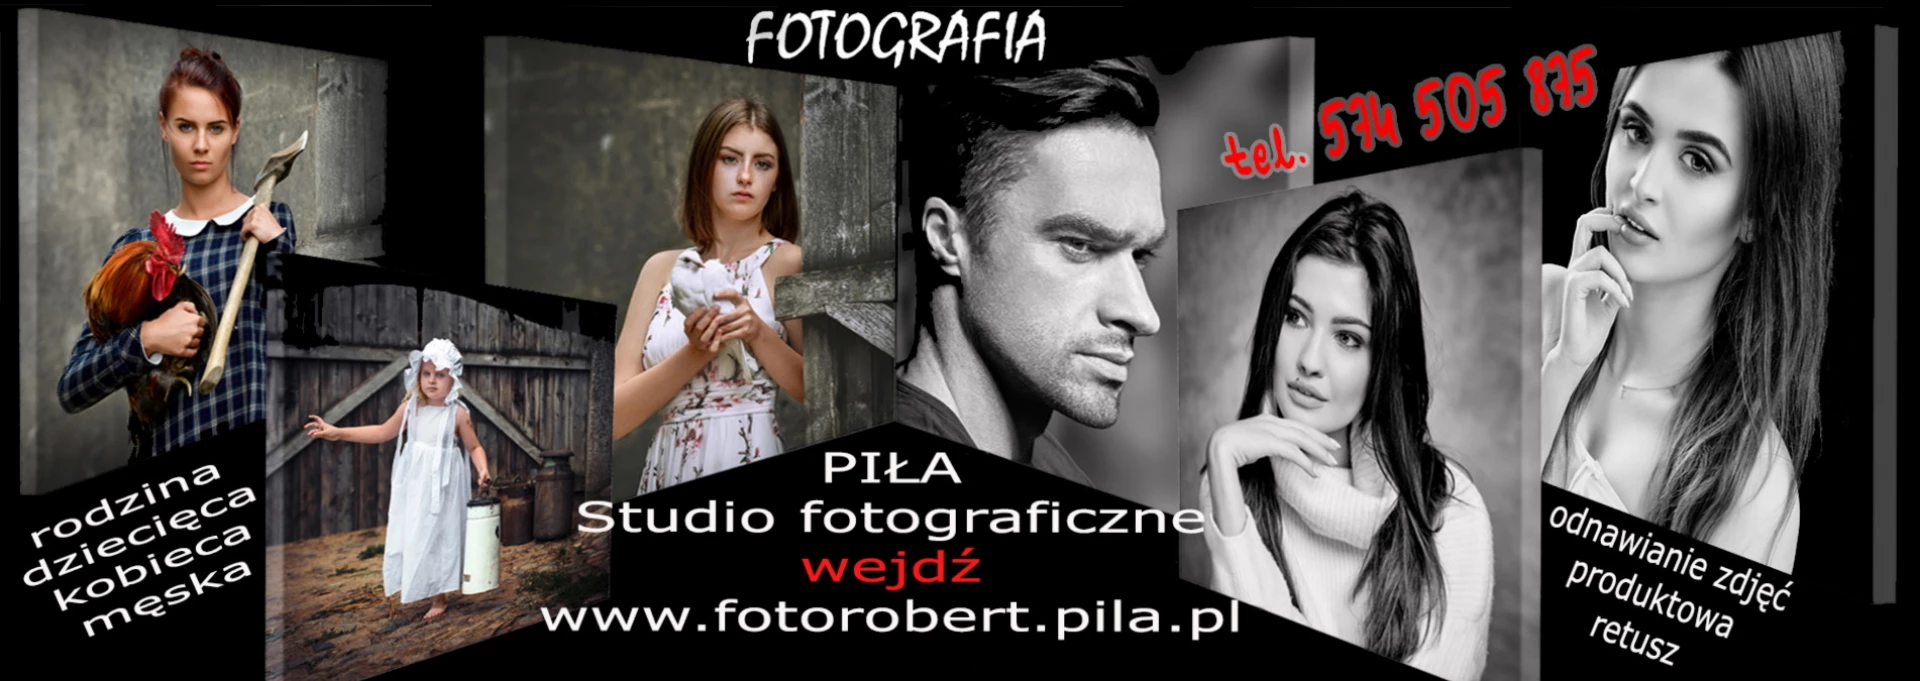 portfolio zdjecia znany fotograf fotorobert-pila